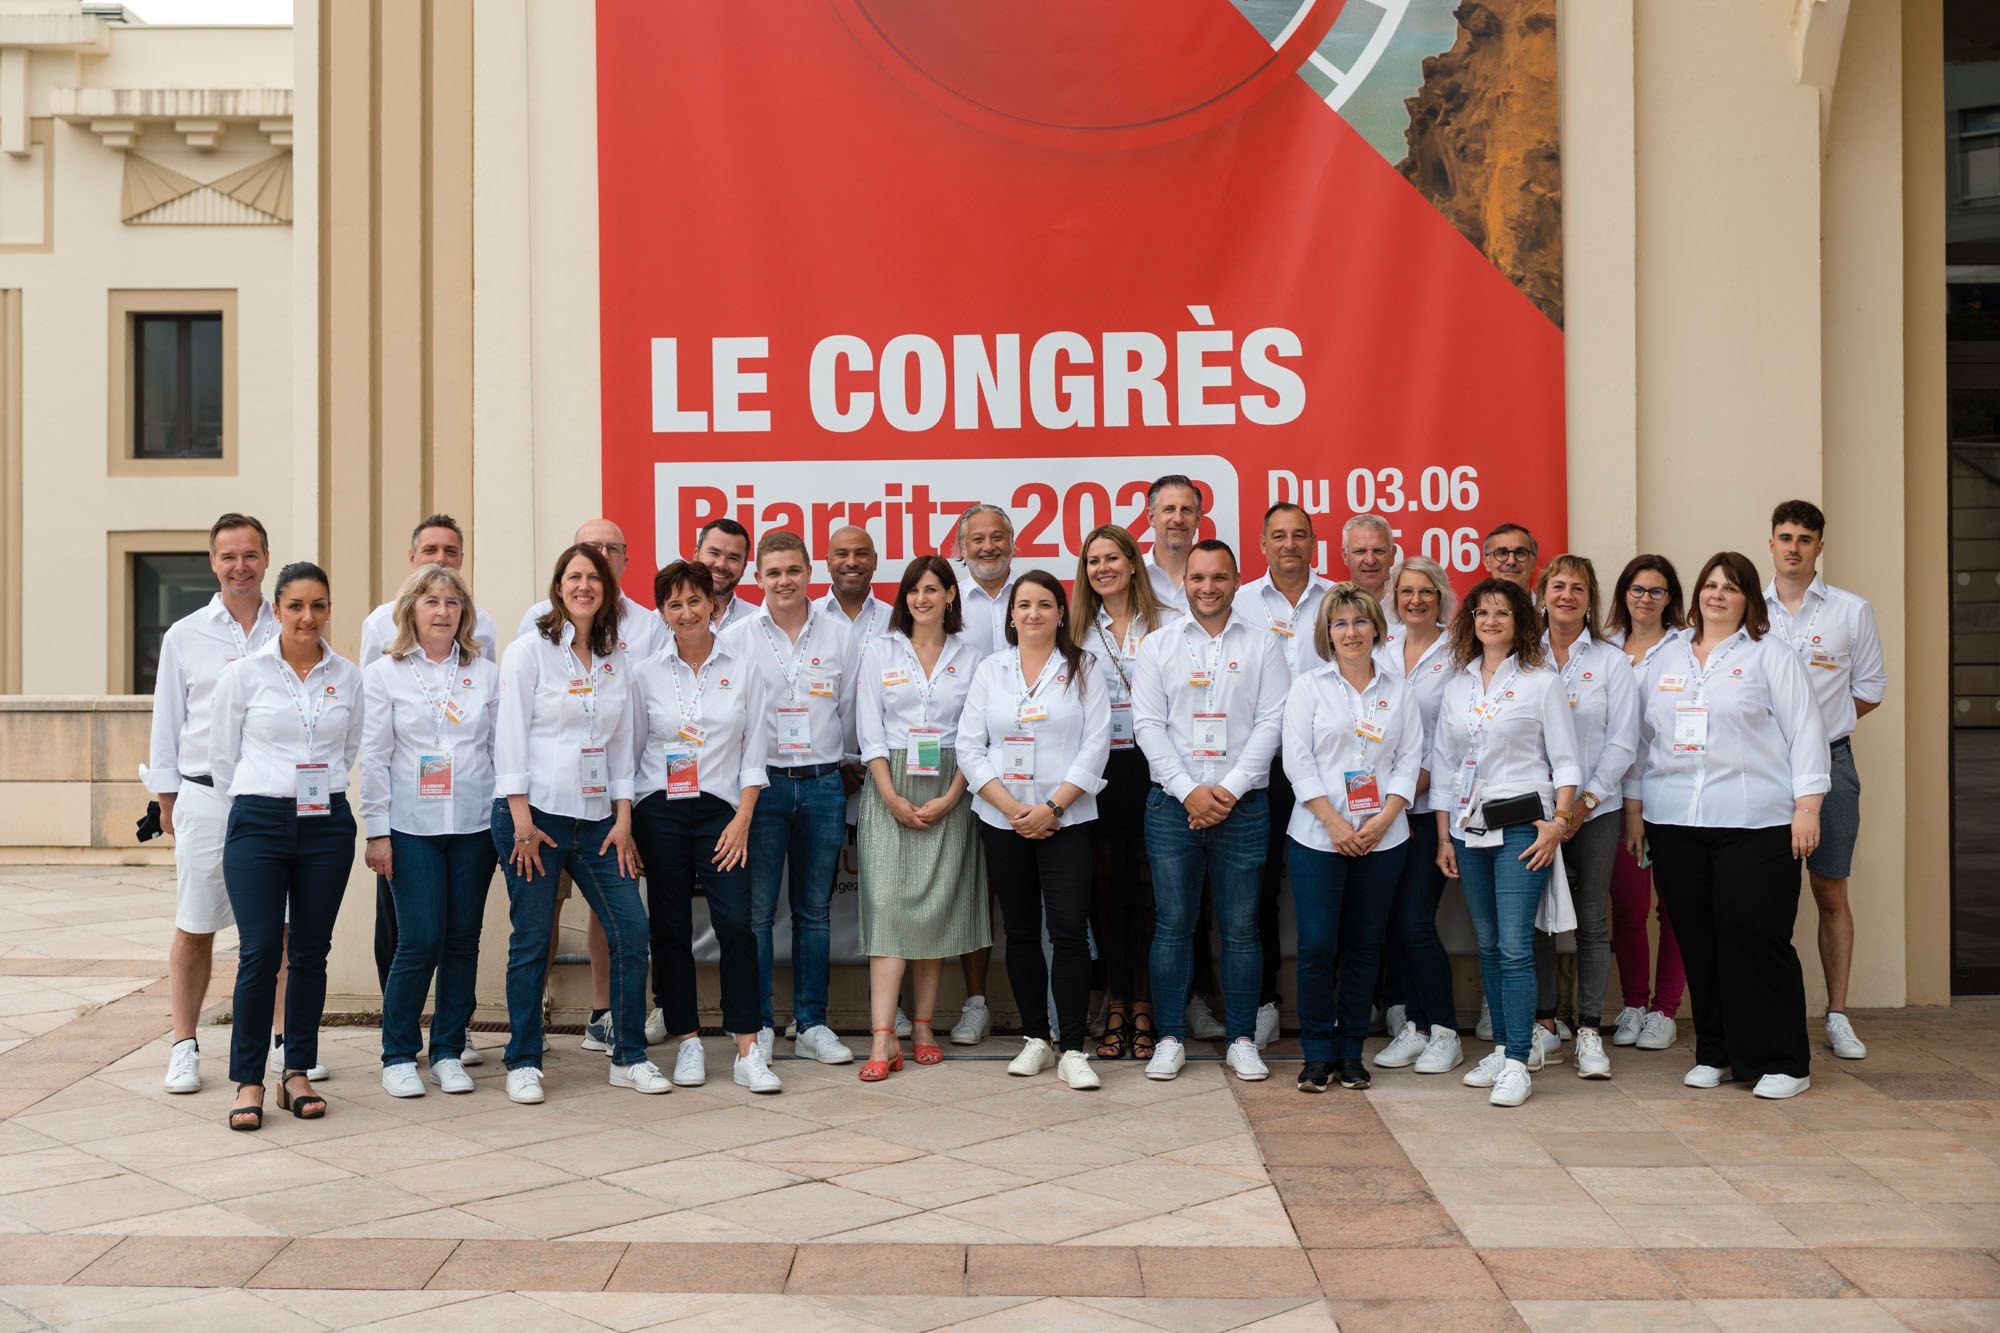 Congreso anual de DER KREIS France